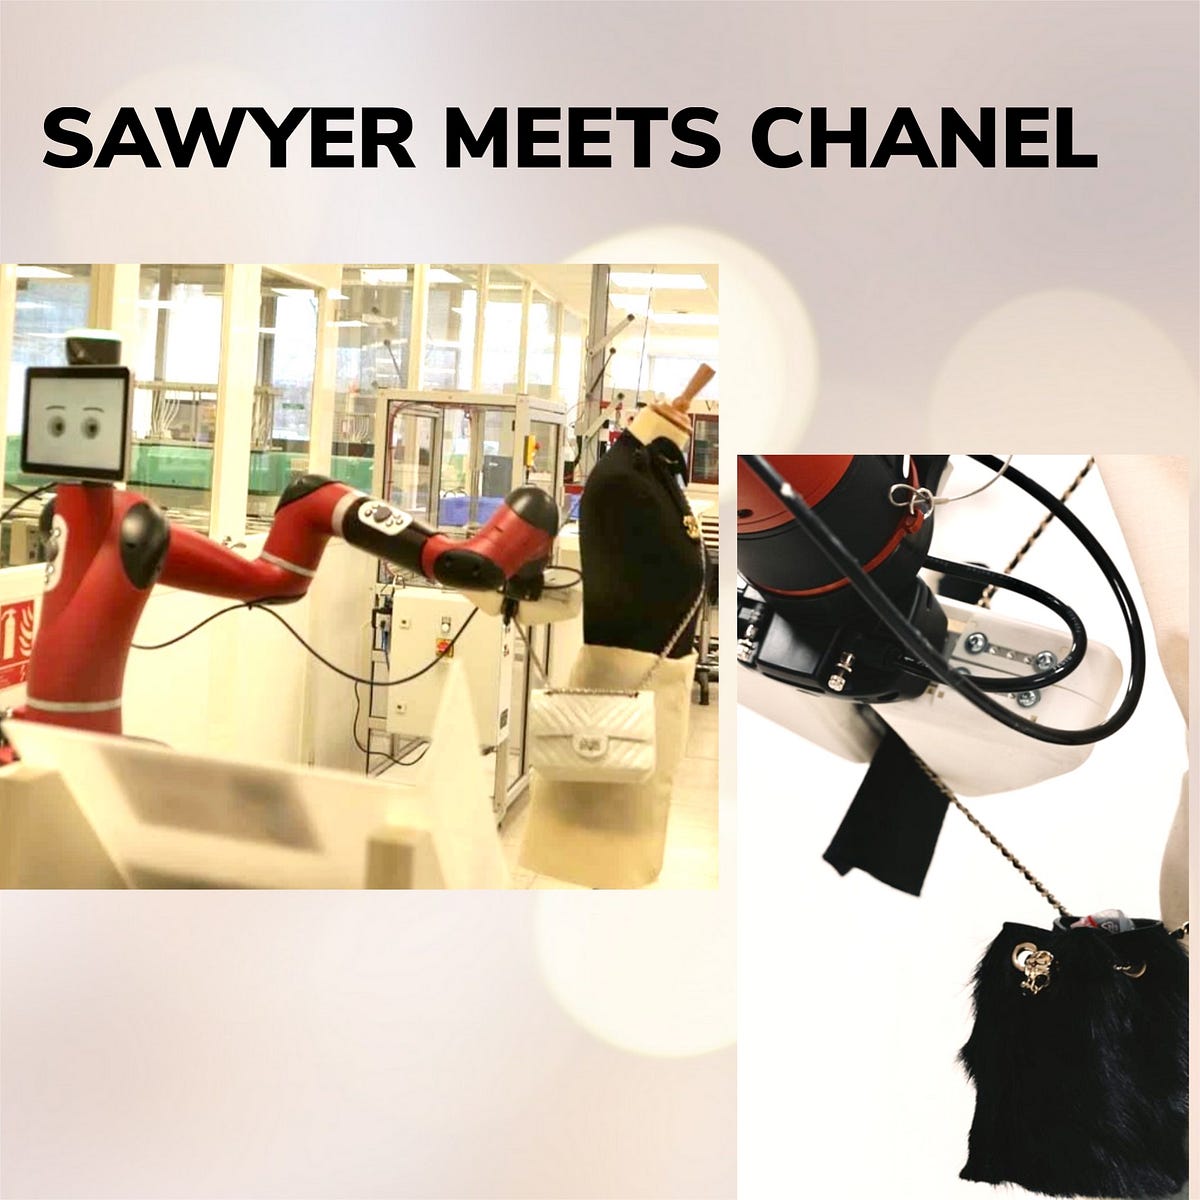 Chanel sawyer